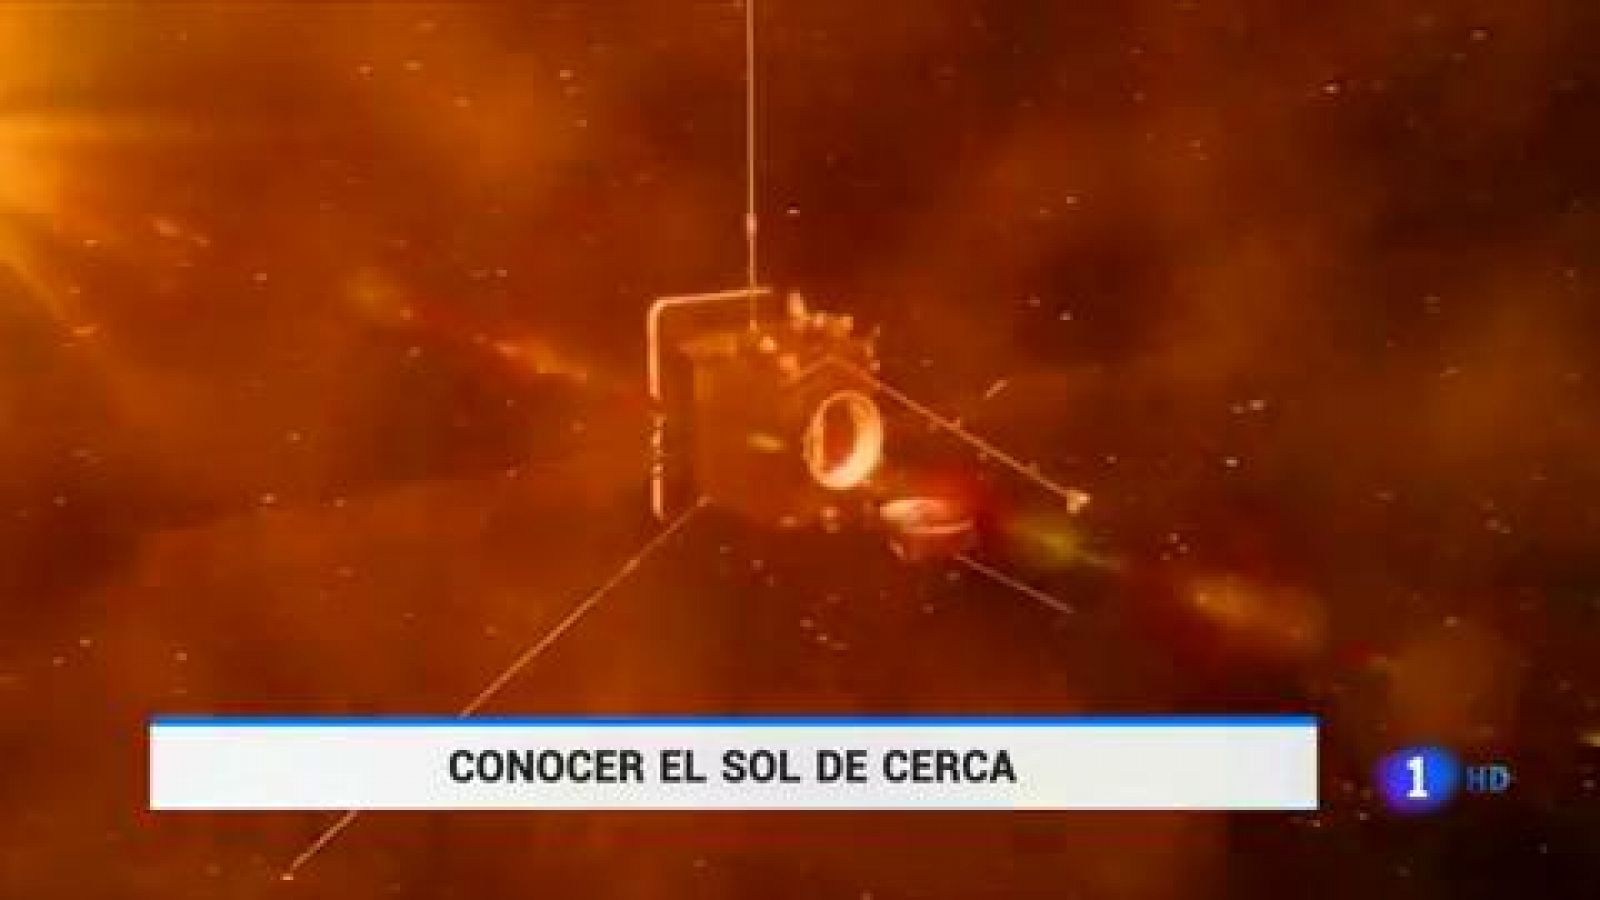 La misión europea 'Solar Orbiter' observará por primera vez el polo norte y sur del Sol